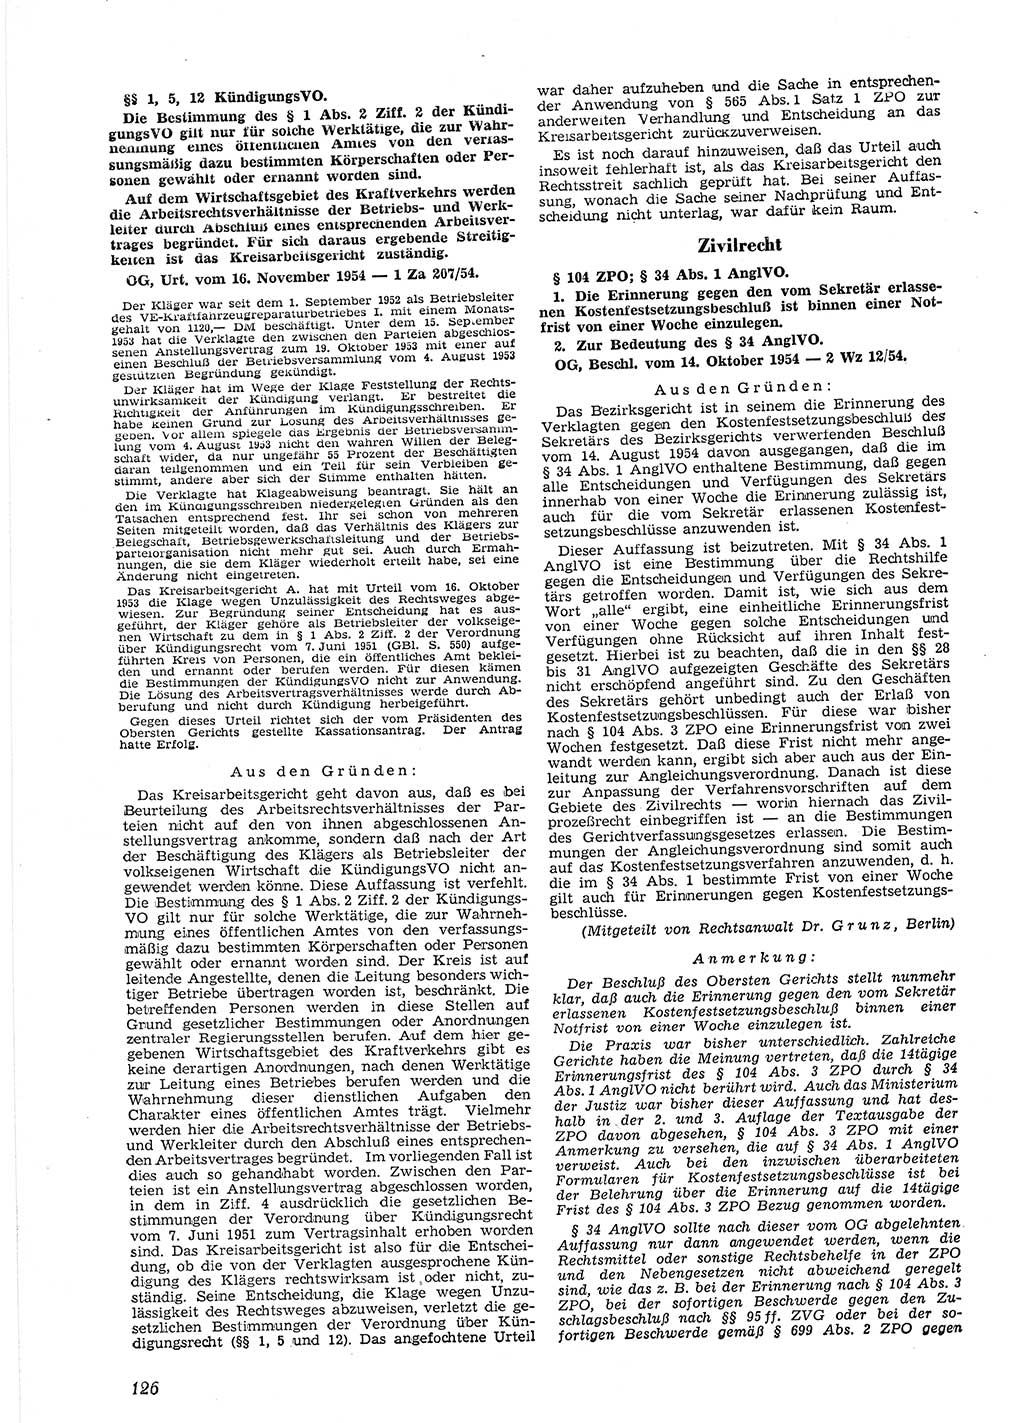 Neue Justiz (NJ), Zeitschrift für Recht und Rechtswissenschaft [Deutsche Demokratische Republik (DDR)], 9. Jahrgang 1955, Seite 126 (NJ DDR 1955, S. 126)